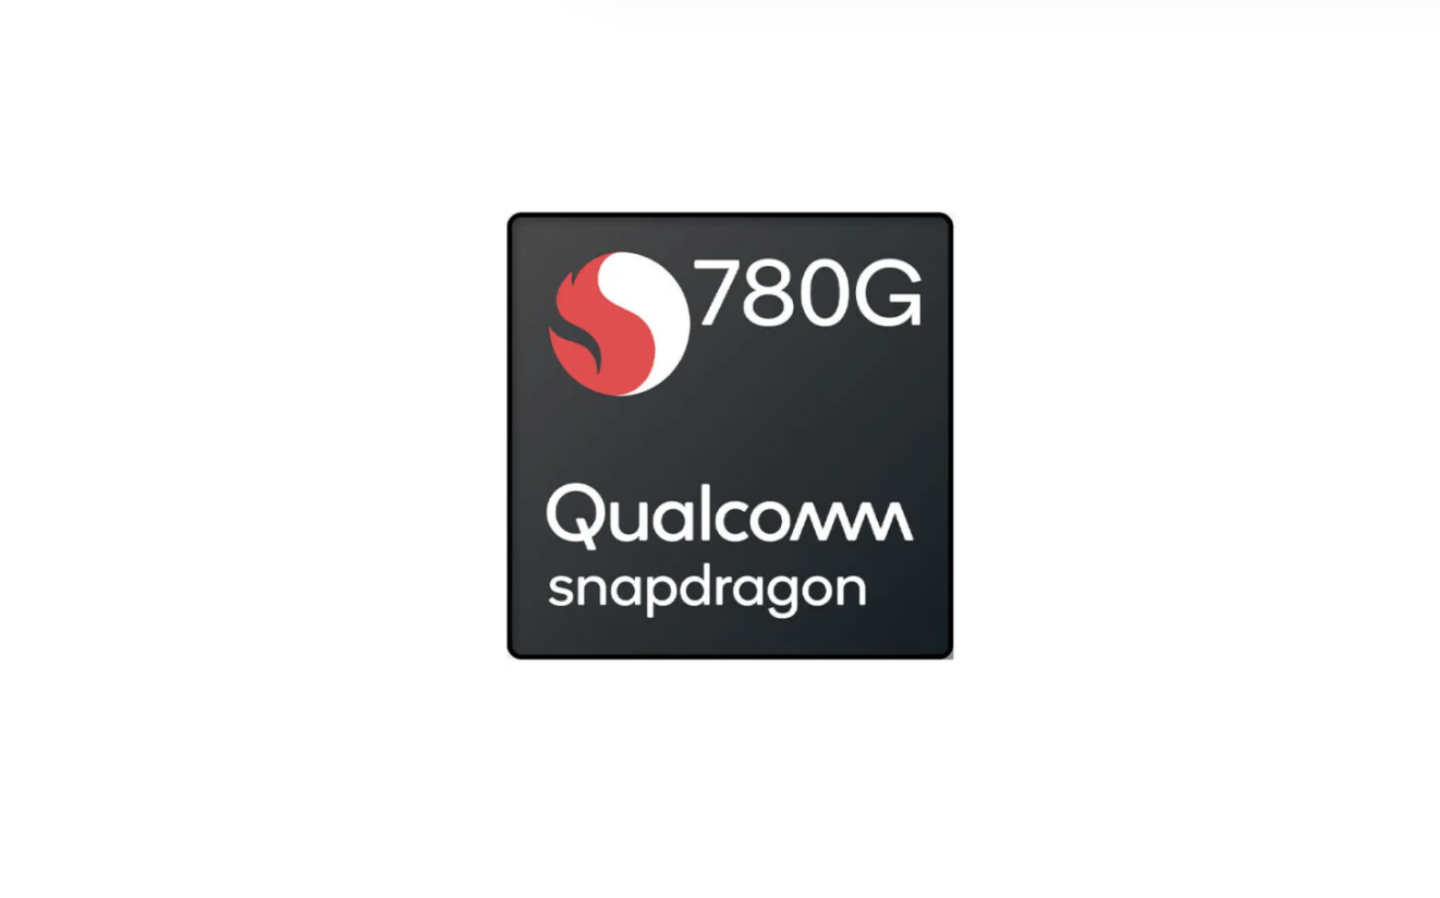 高通推中高階 5G 晶片 S780G！支援 Wi-Fi 6 功能、Snapdragon Sound 新音訊技術